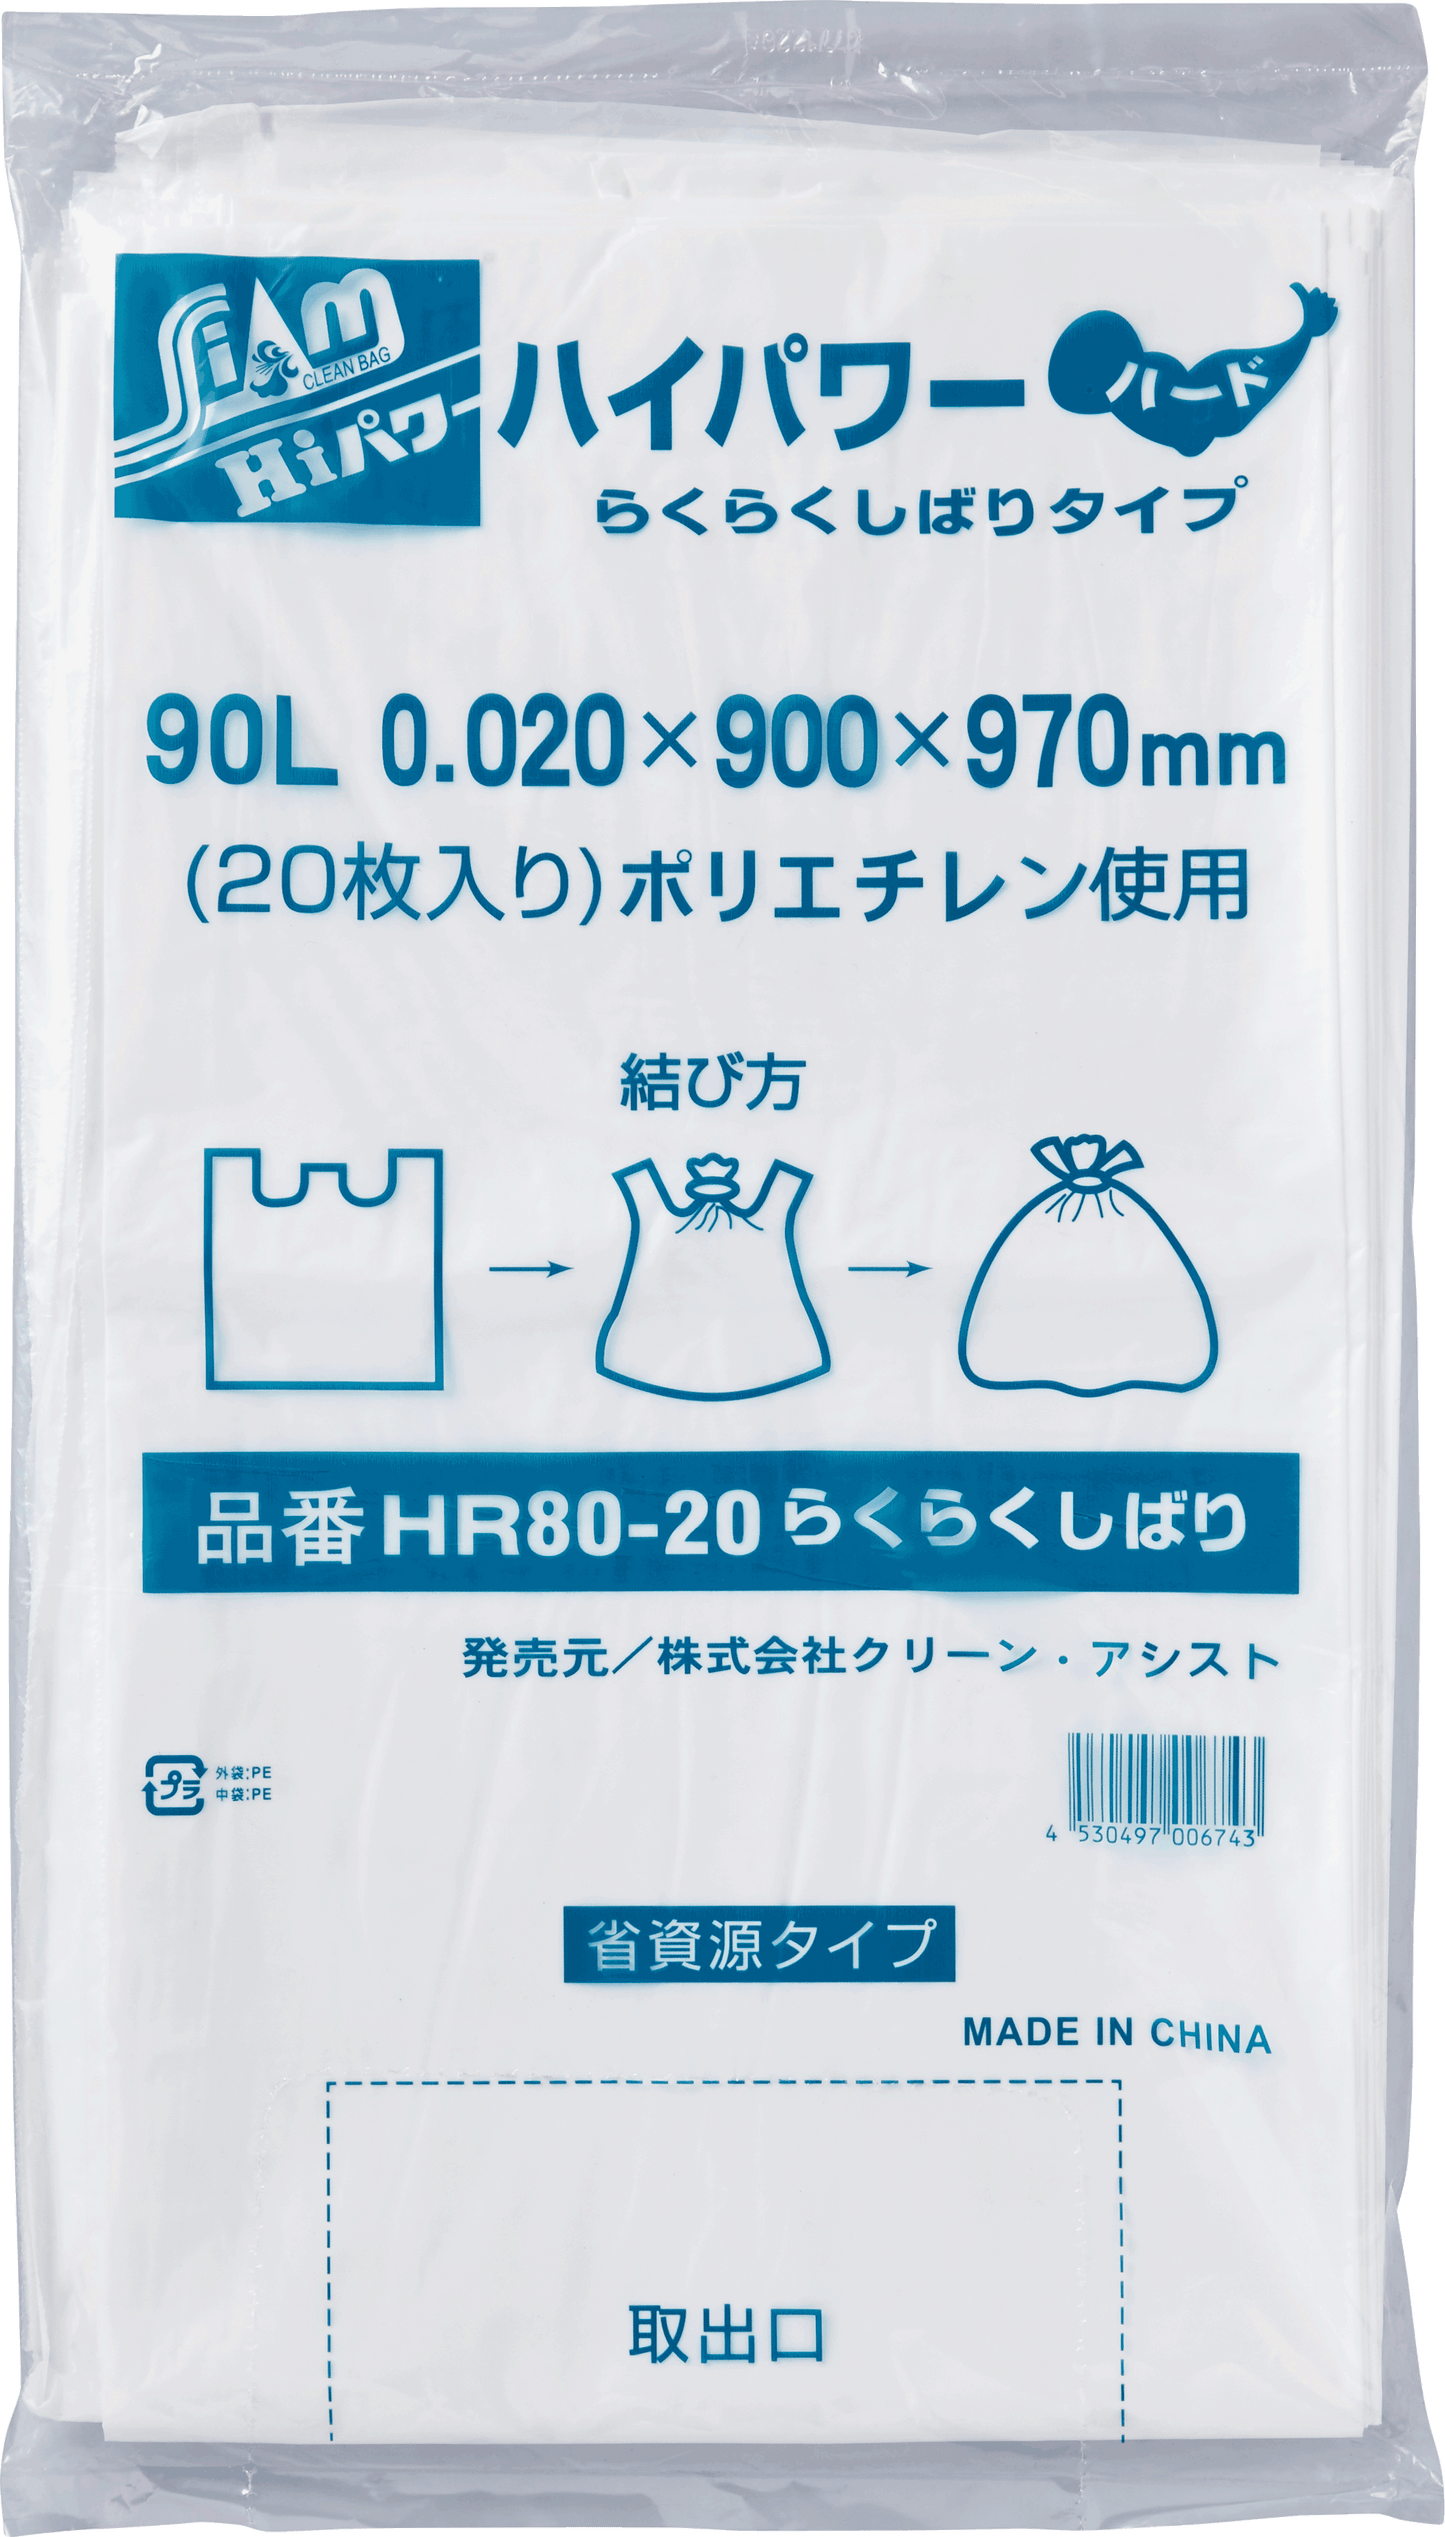 HR80-20らくらくしばり 90L